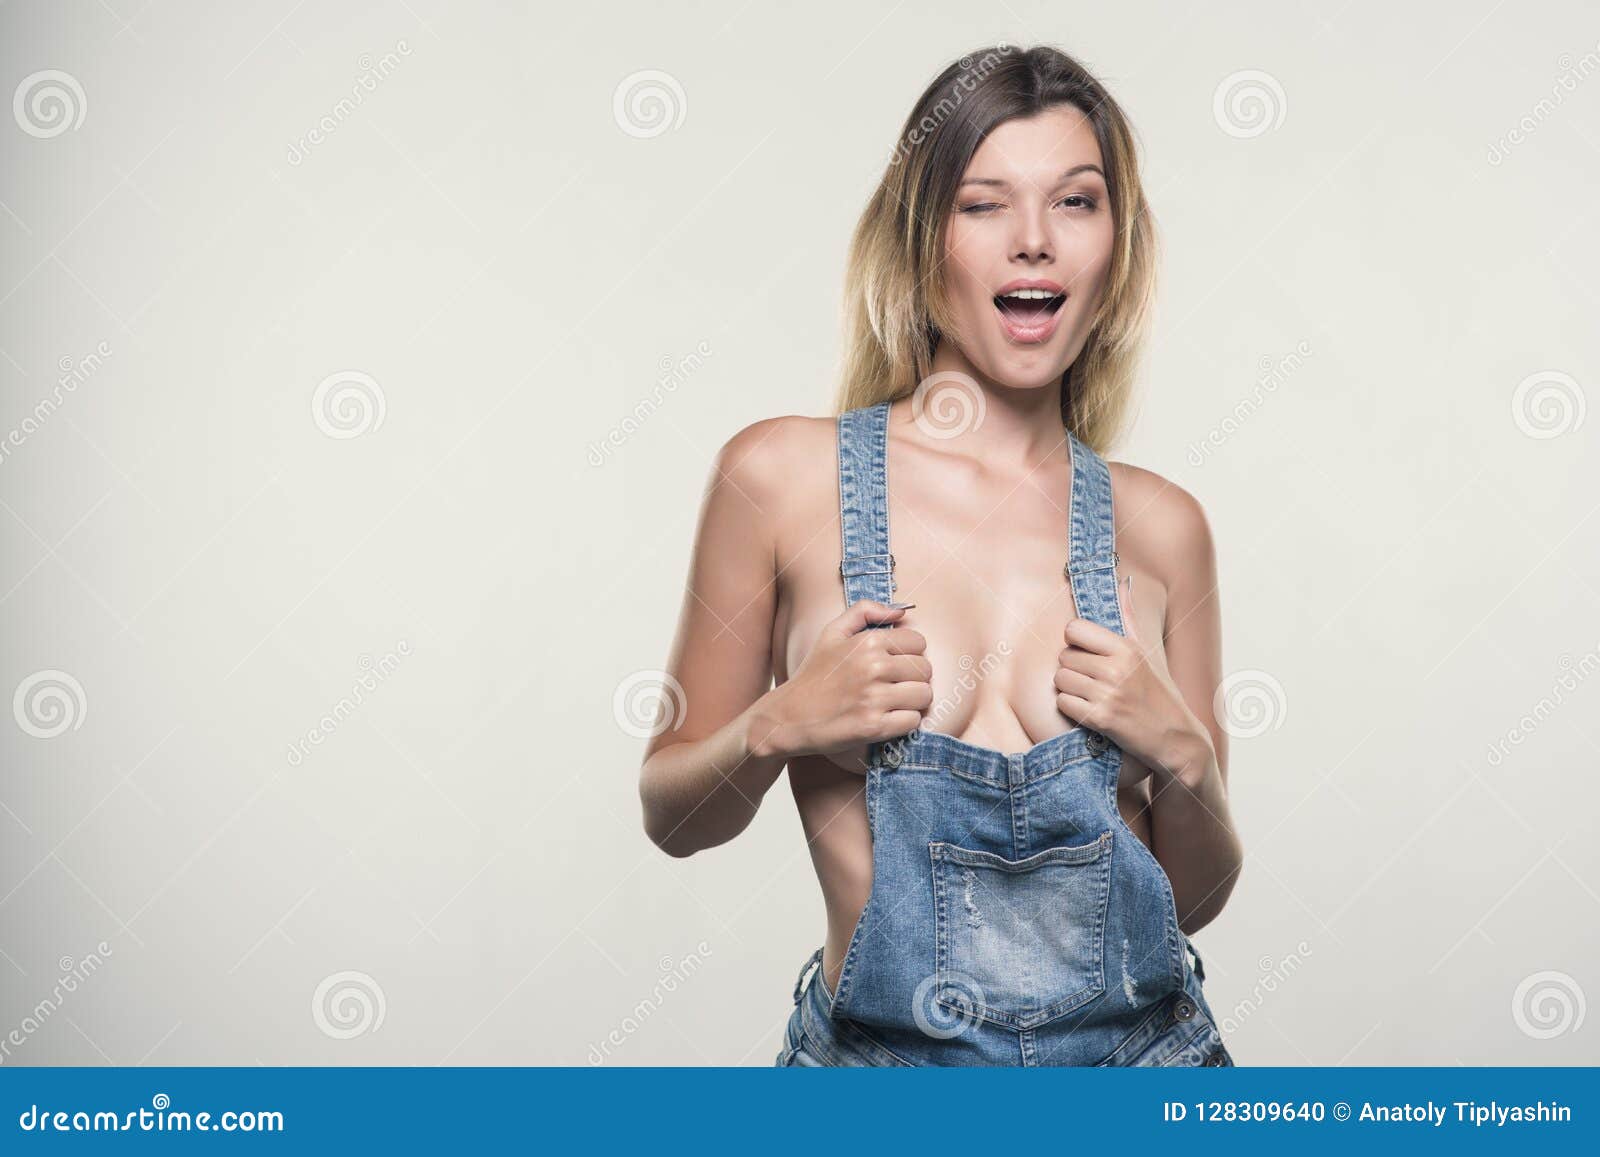 Topless Women In Overalls